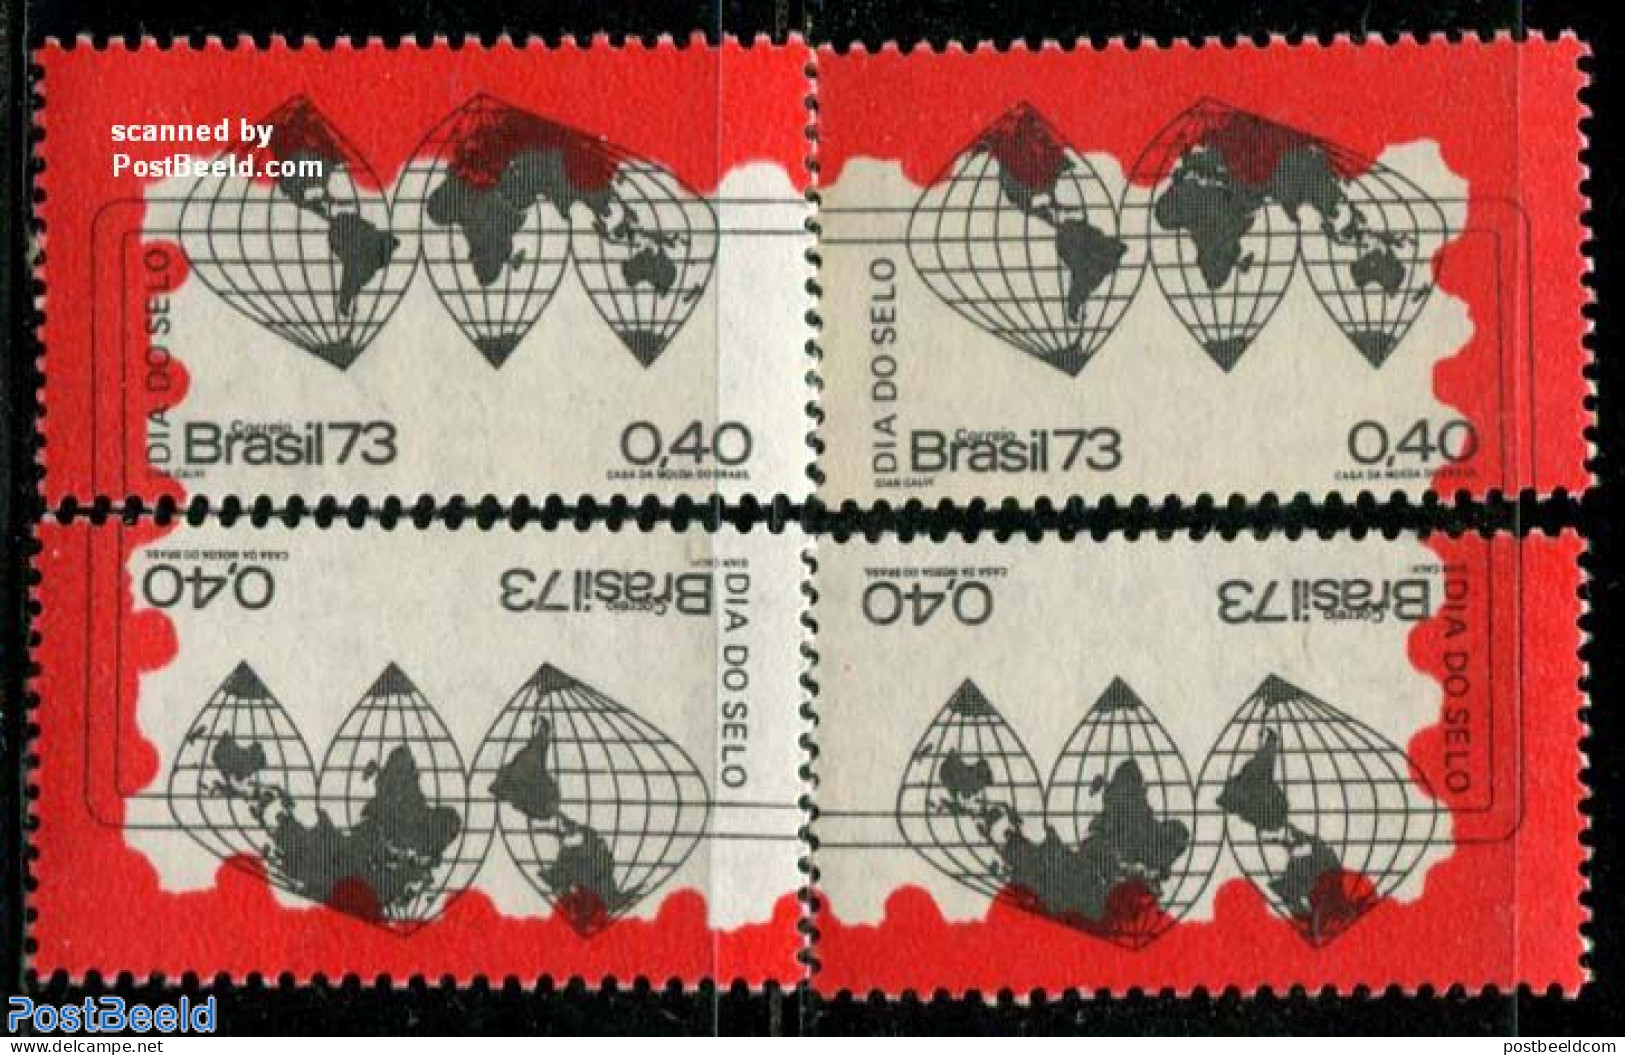 Brazil 1973 Stamp Day 4v, Mint NH, Globes - Maps - Neufs